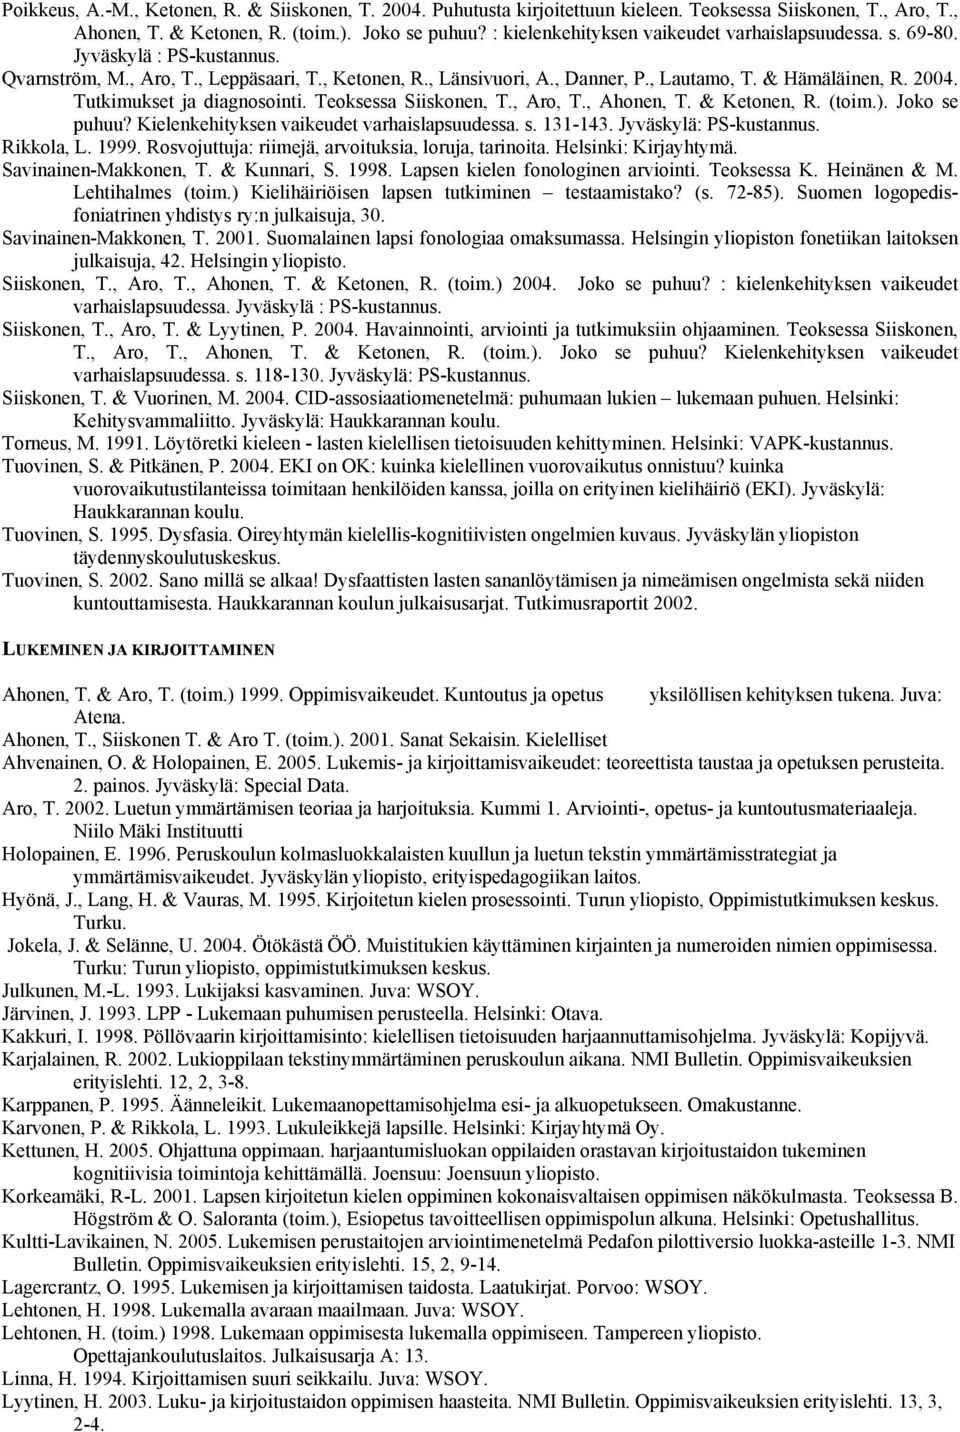 Tutkimukset ja diagnosointi. Teoksessa Siiskonen, T., Aro, T., Ahonen, T. & Ketonen, R. (toim.). Joko se puhuu? Kielenkehityksen vaikeudet varhaislapsuudessa. s. 131-143. Jyväskylä: Rikkola, L. 1999.